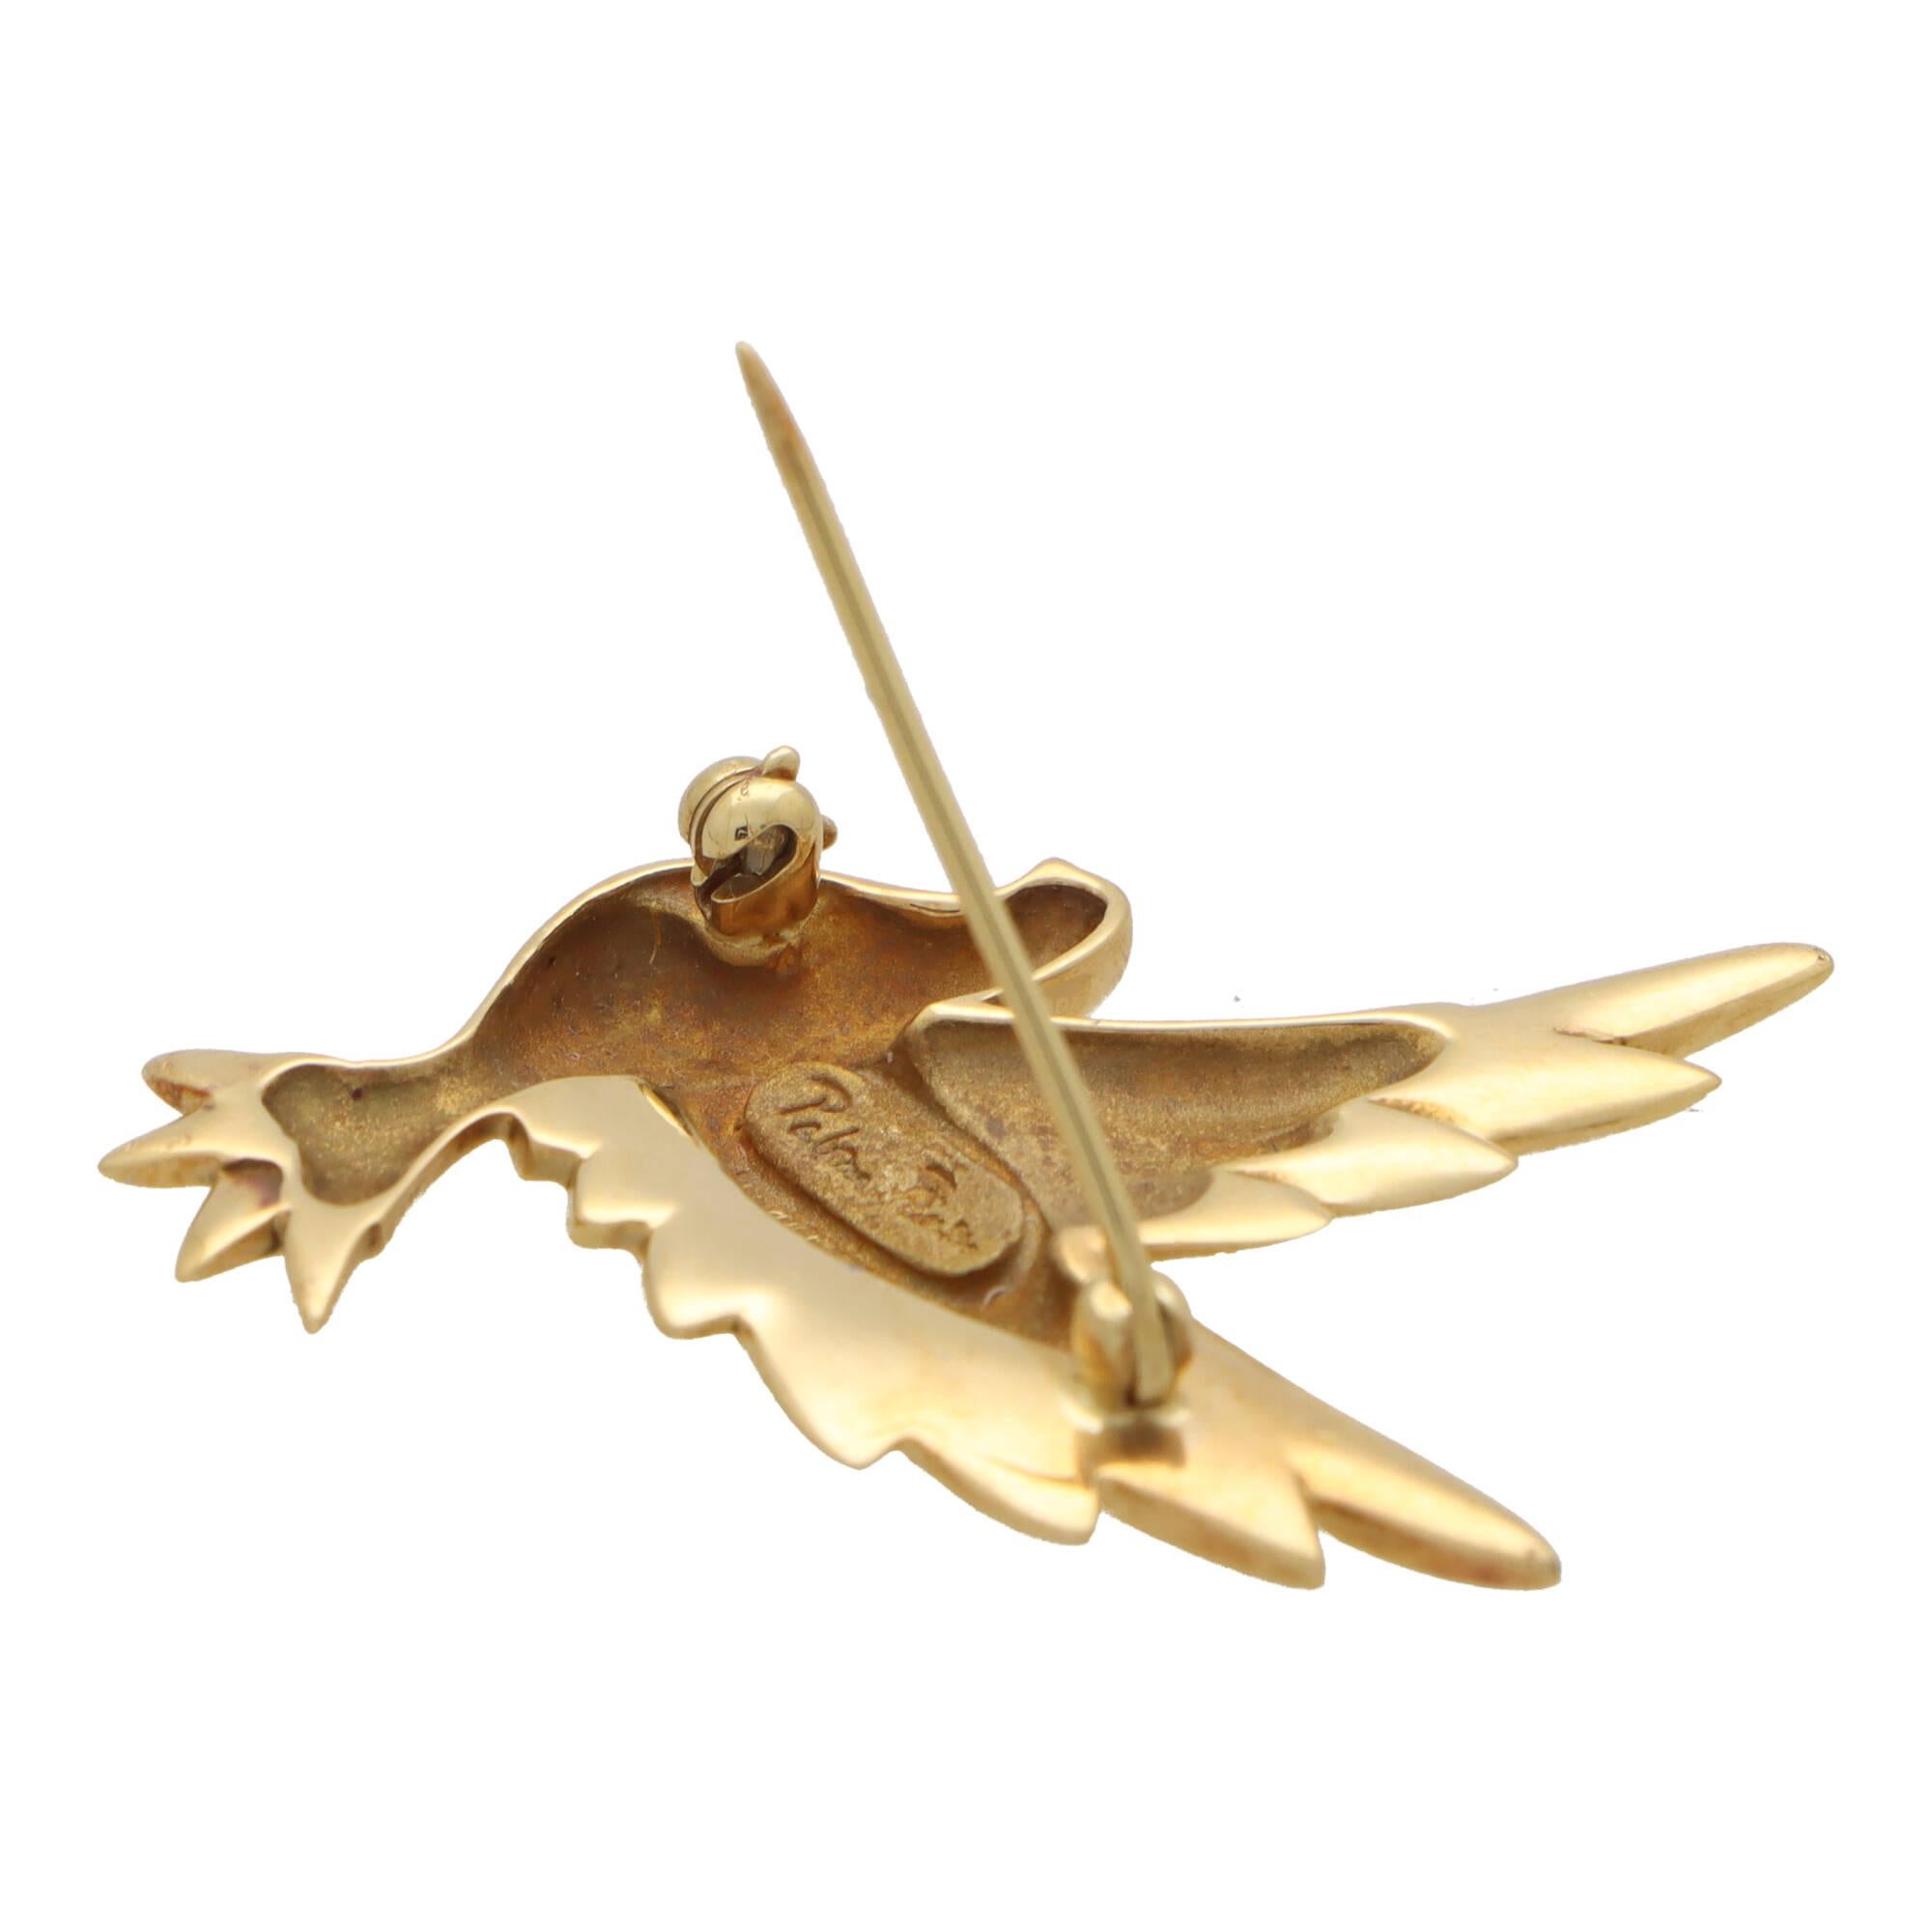 Magnifique broche colombe vintage de Paloma Picasso pour Tiffany & Co. en or jaune 18 carats.

La broche est composée d'un motif de colombe en vol, en or jaune 18 carats poli. Il est fixé à l'envers à l'aide d'un fermoir à rouleaux à longues